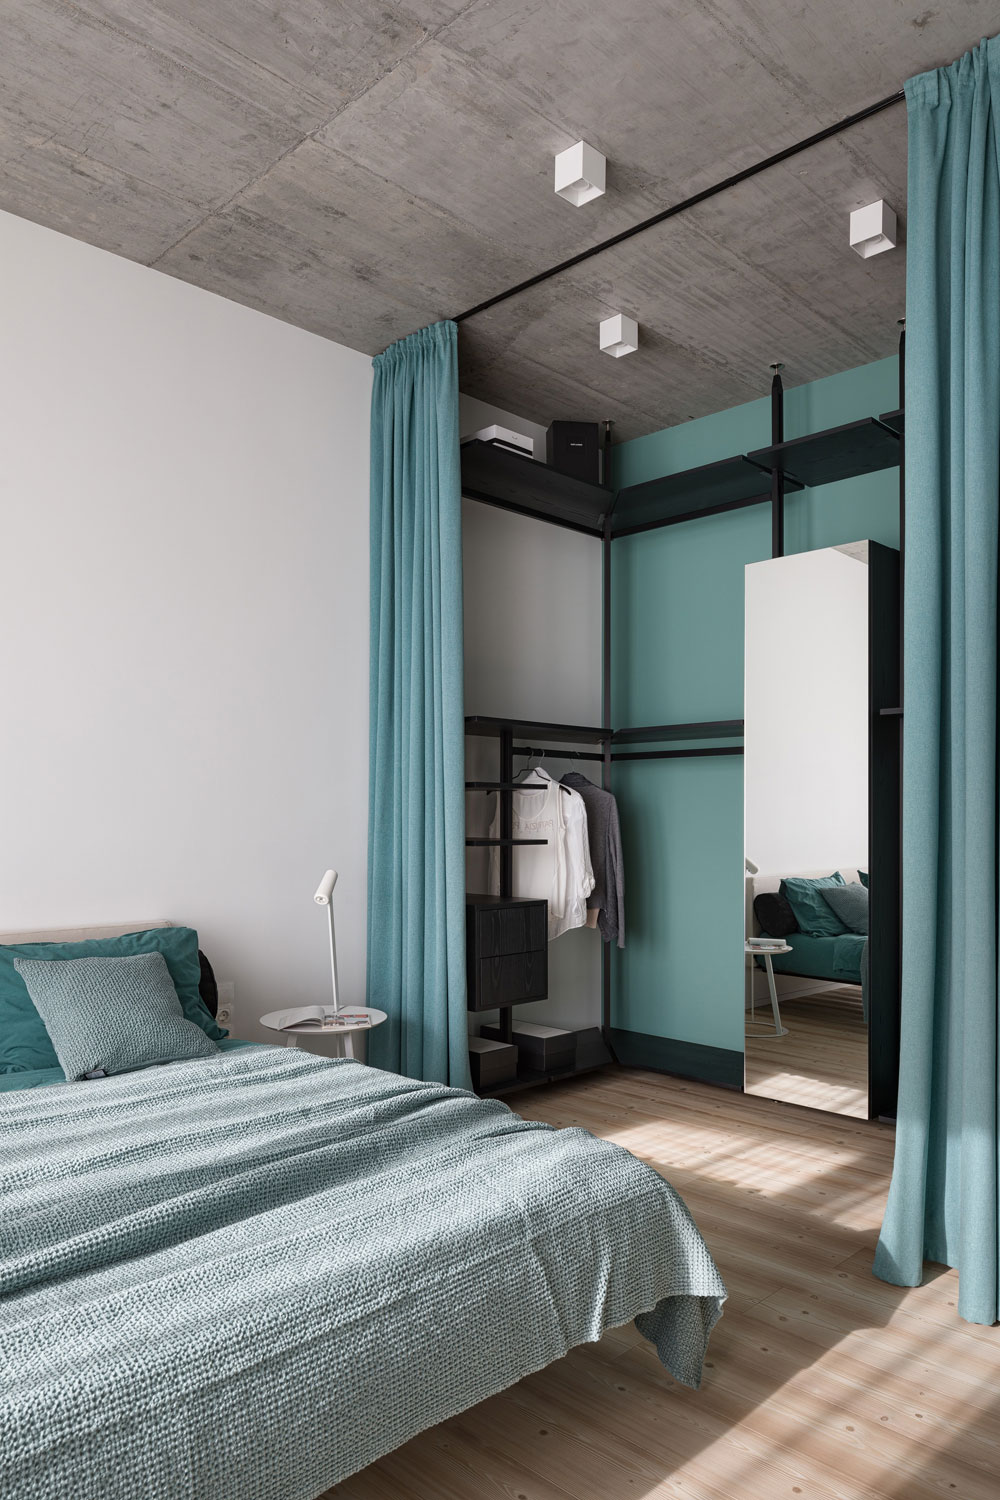 Báo giá thiết kế nội thất phòng ngủ căn hộ chung cư 3